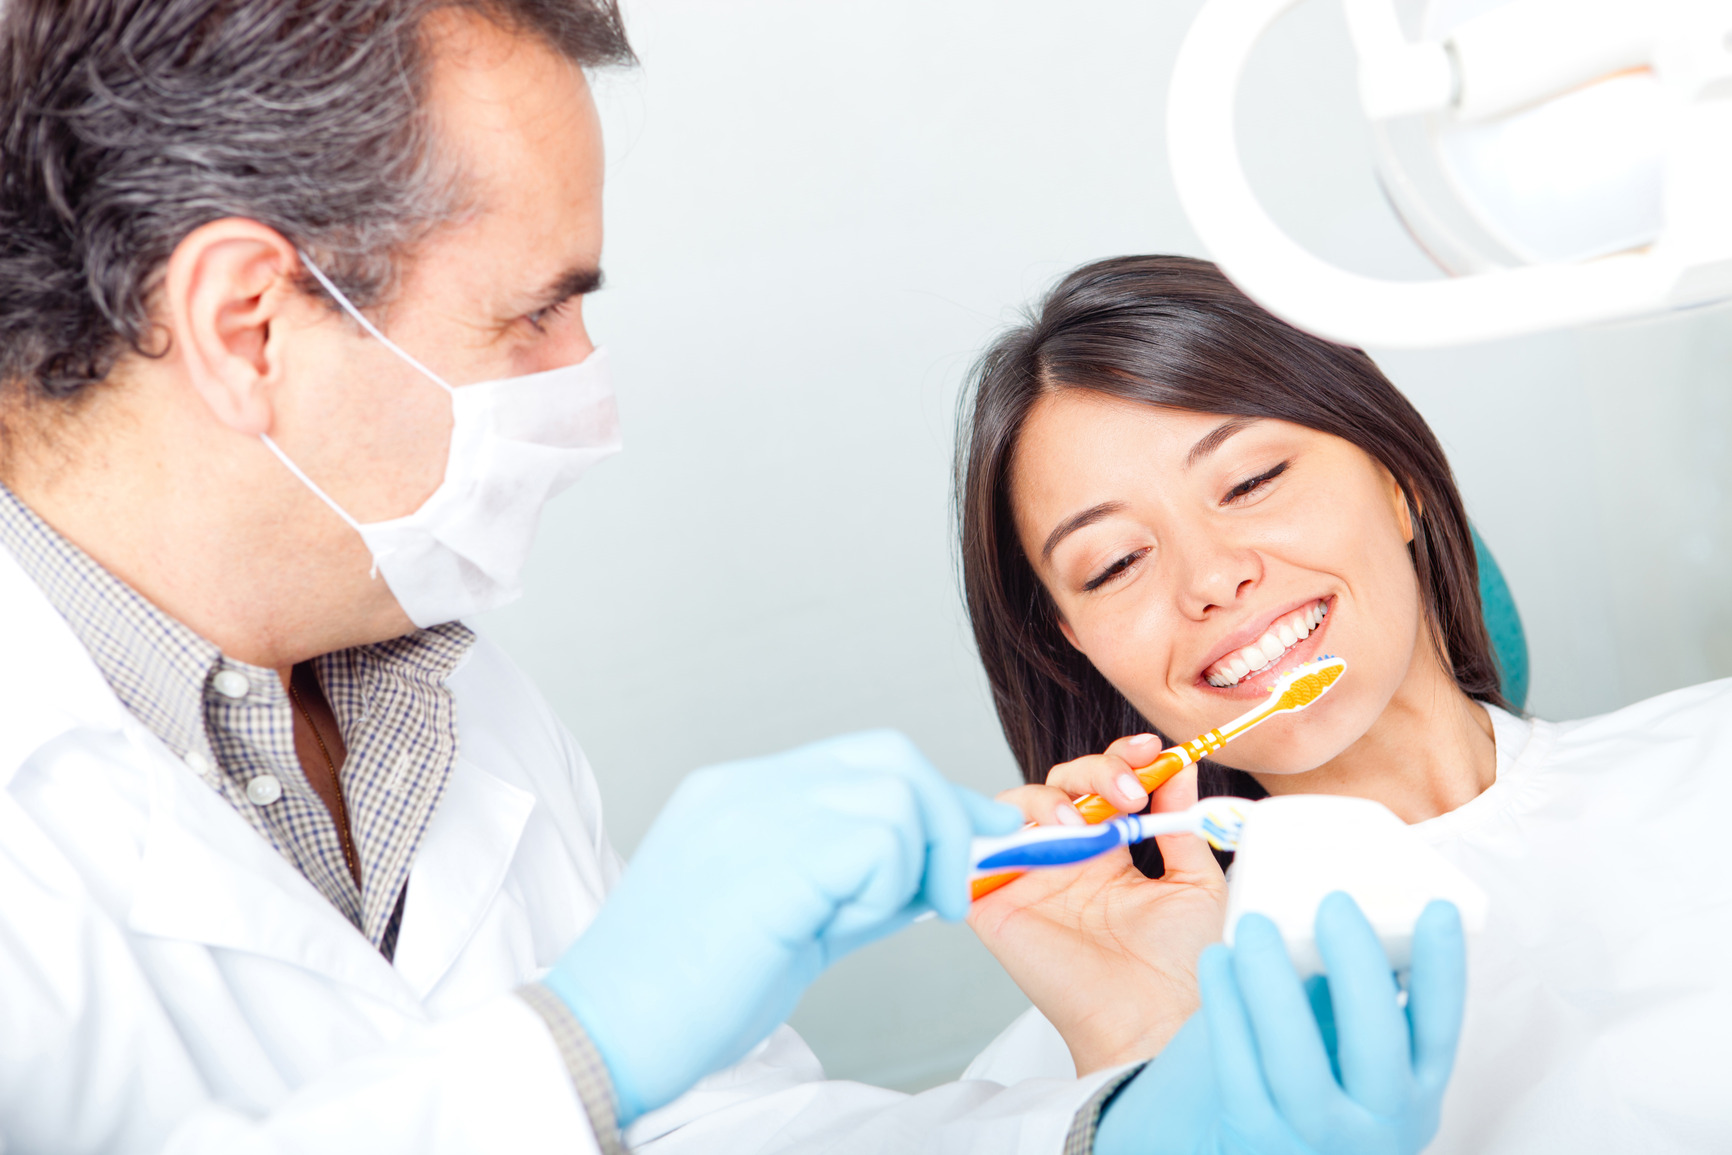 Dentosmile : la gouttière orthodontique invisible